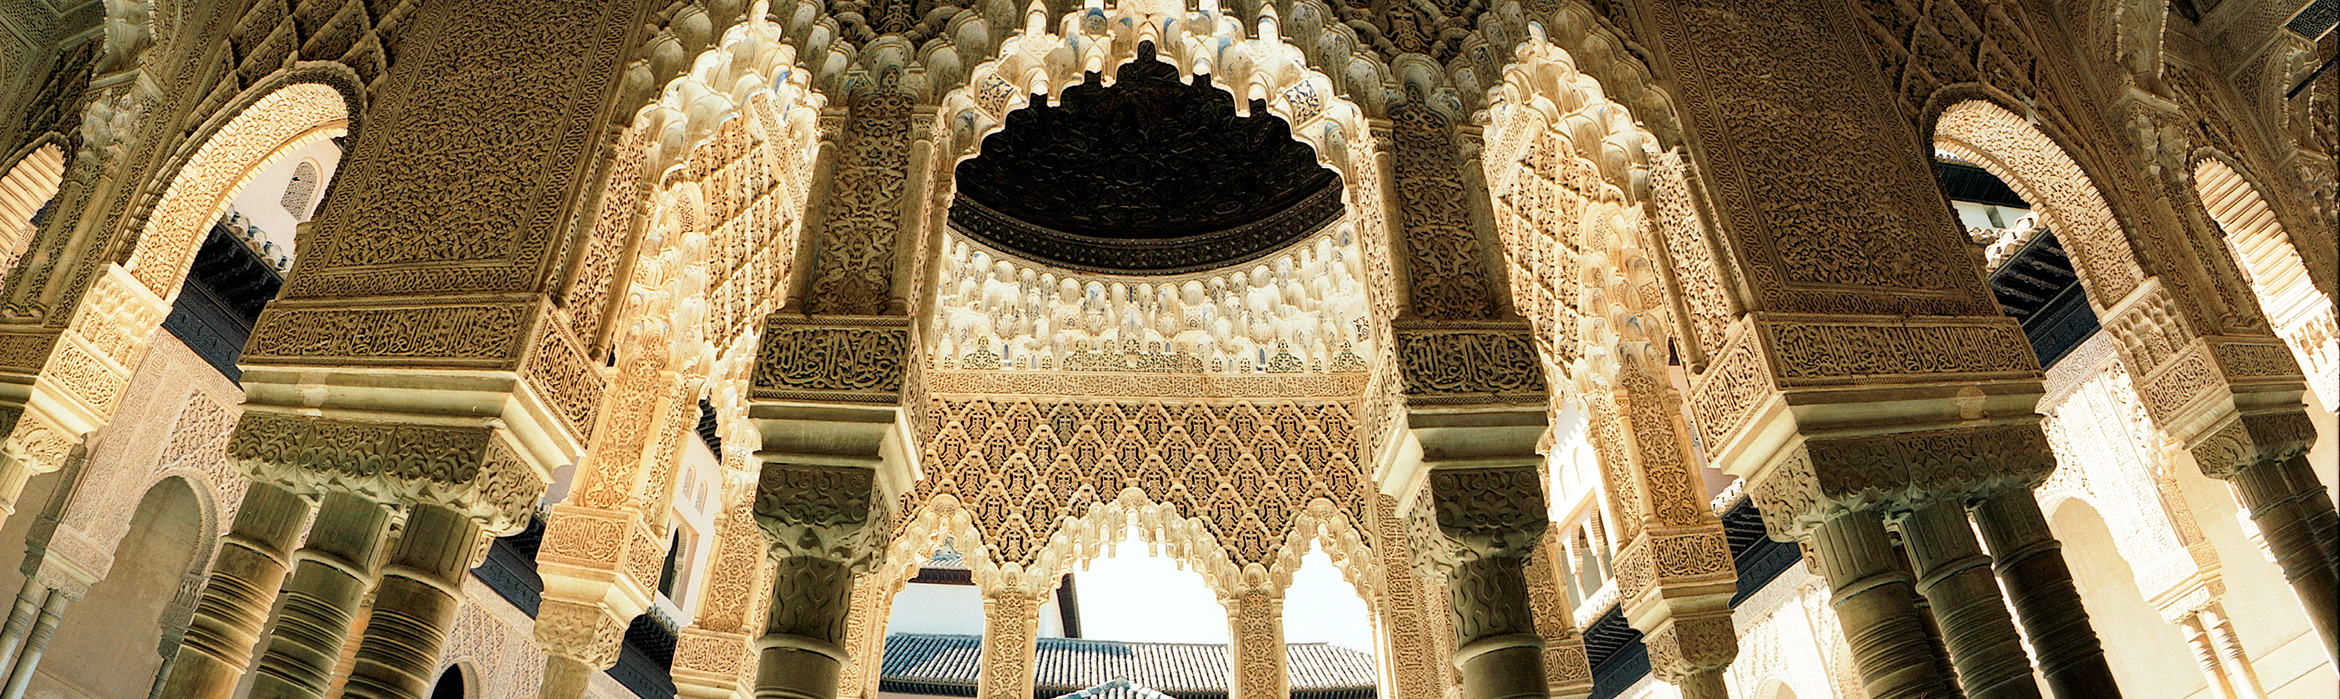 Imagen en la que se puede apreciar los arcos, las columnas y la decoración de la Alhambra.